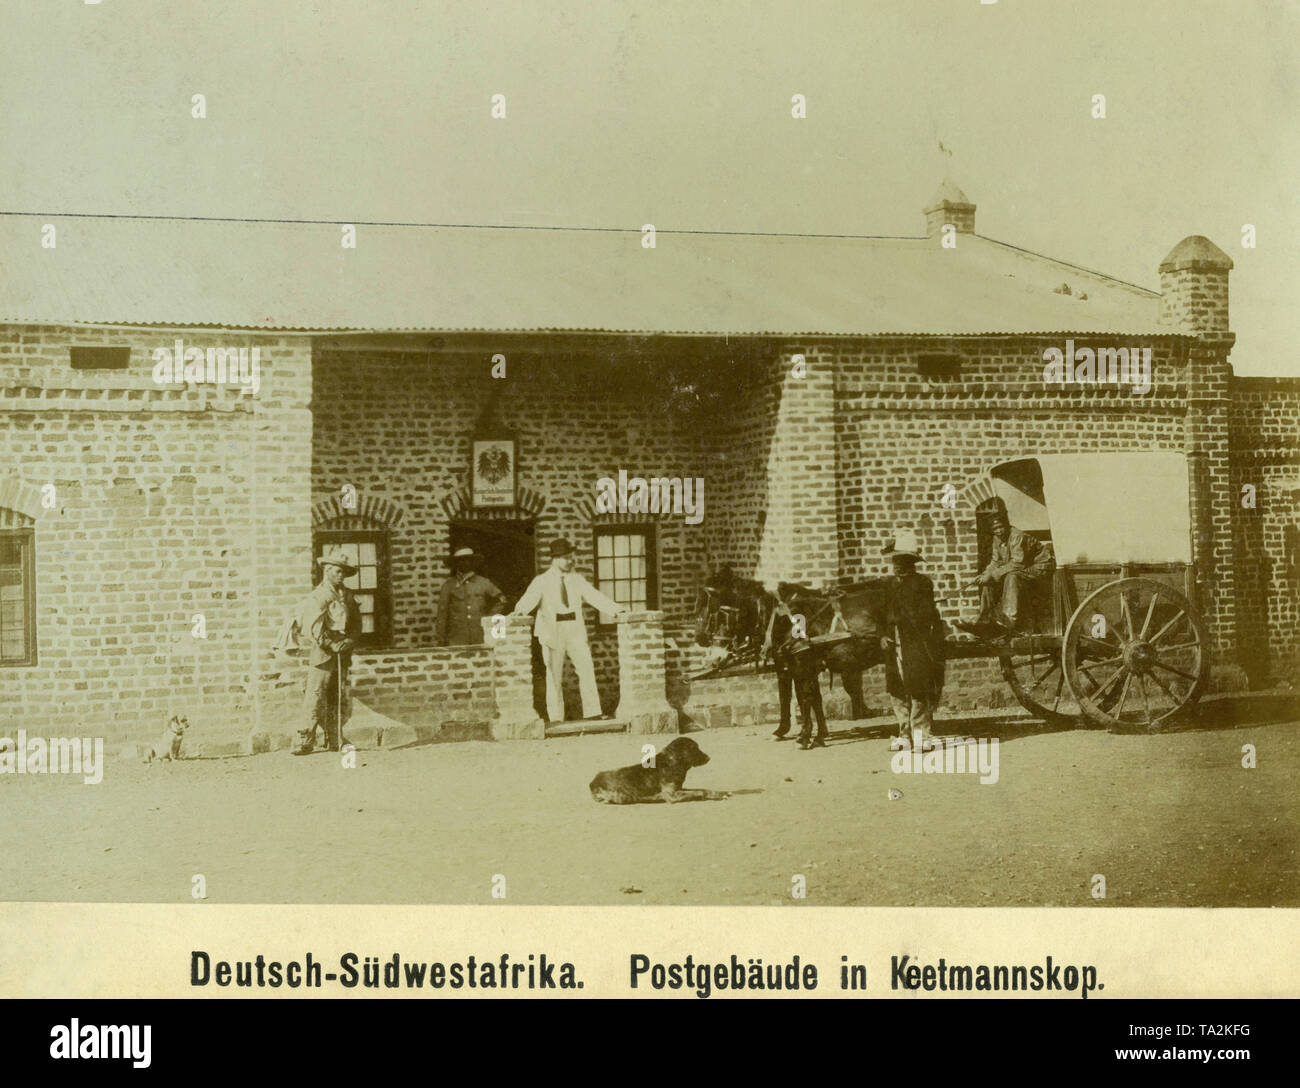 Einer postkutsche vor der Kaiserlichen Postagentur in Keetmanskoop in Deutsch Süd West Afrika (Undatiertes Foto). Stockfoto